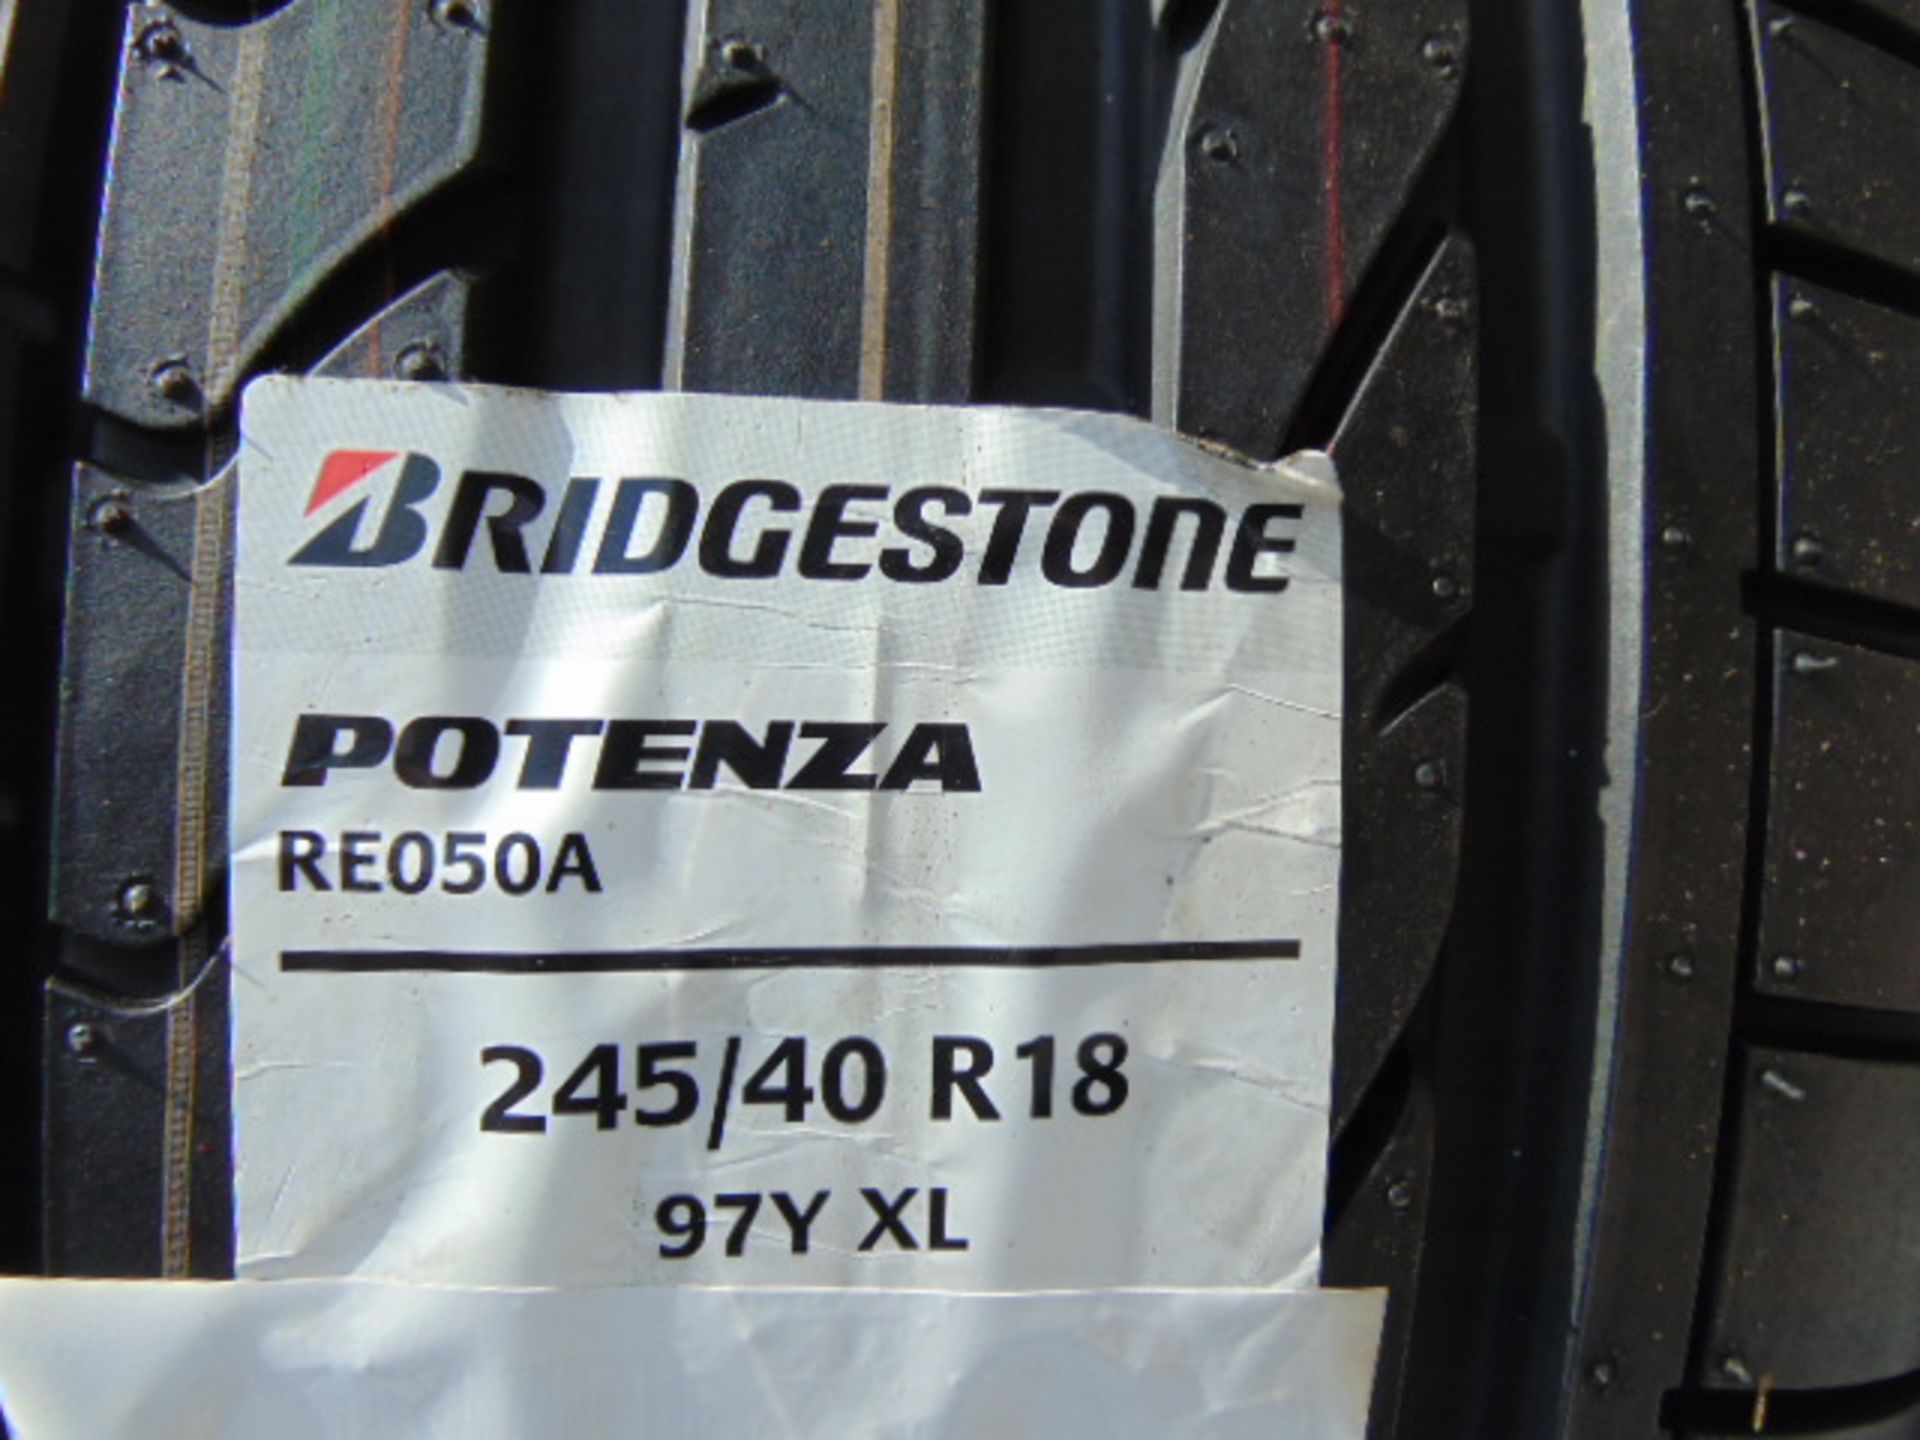 4 x Bridgestone Potenza 245/40 R18 97Y XL Tyres - Image 2 of 8